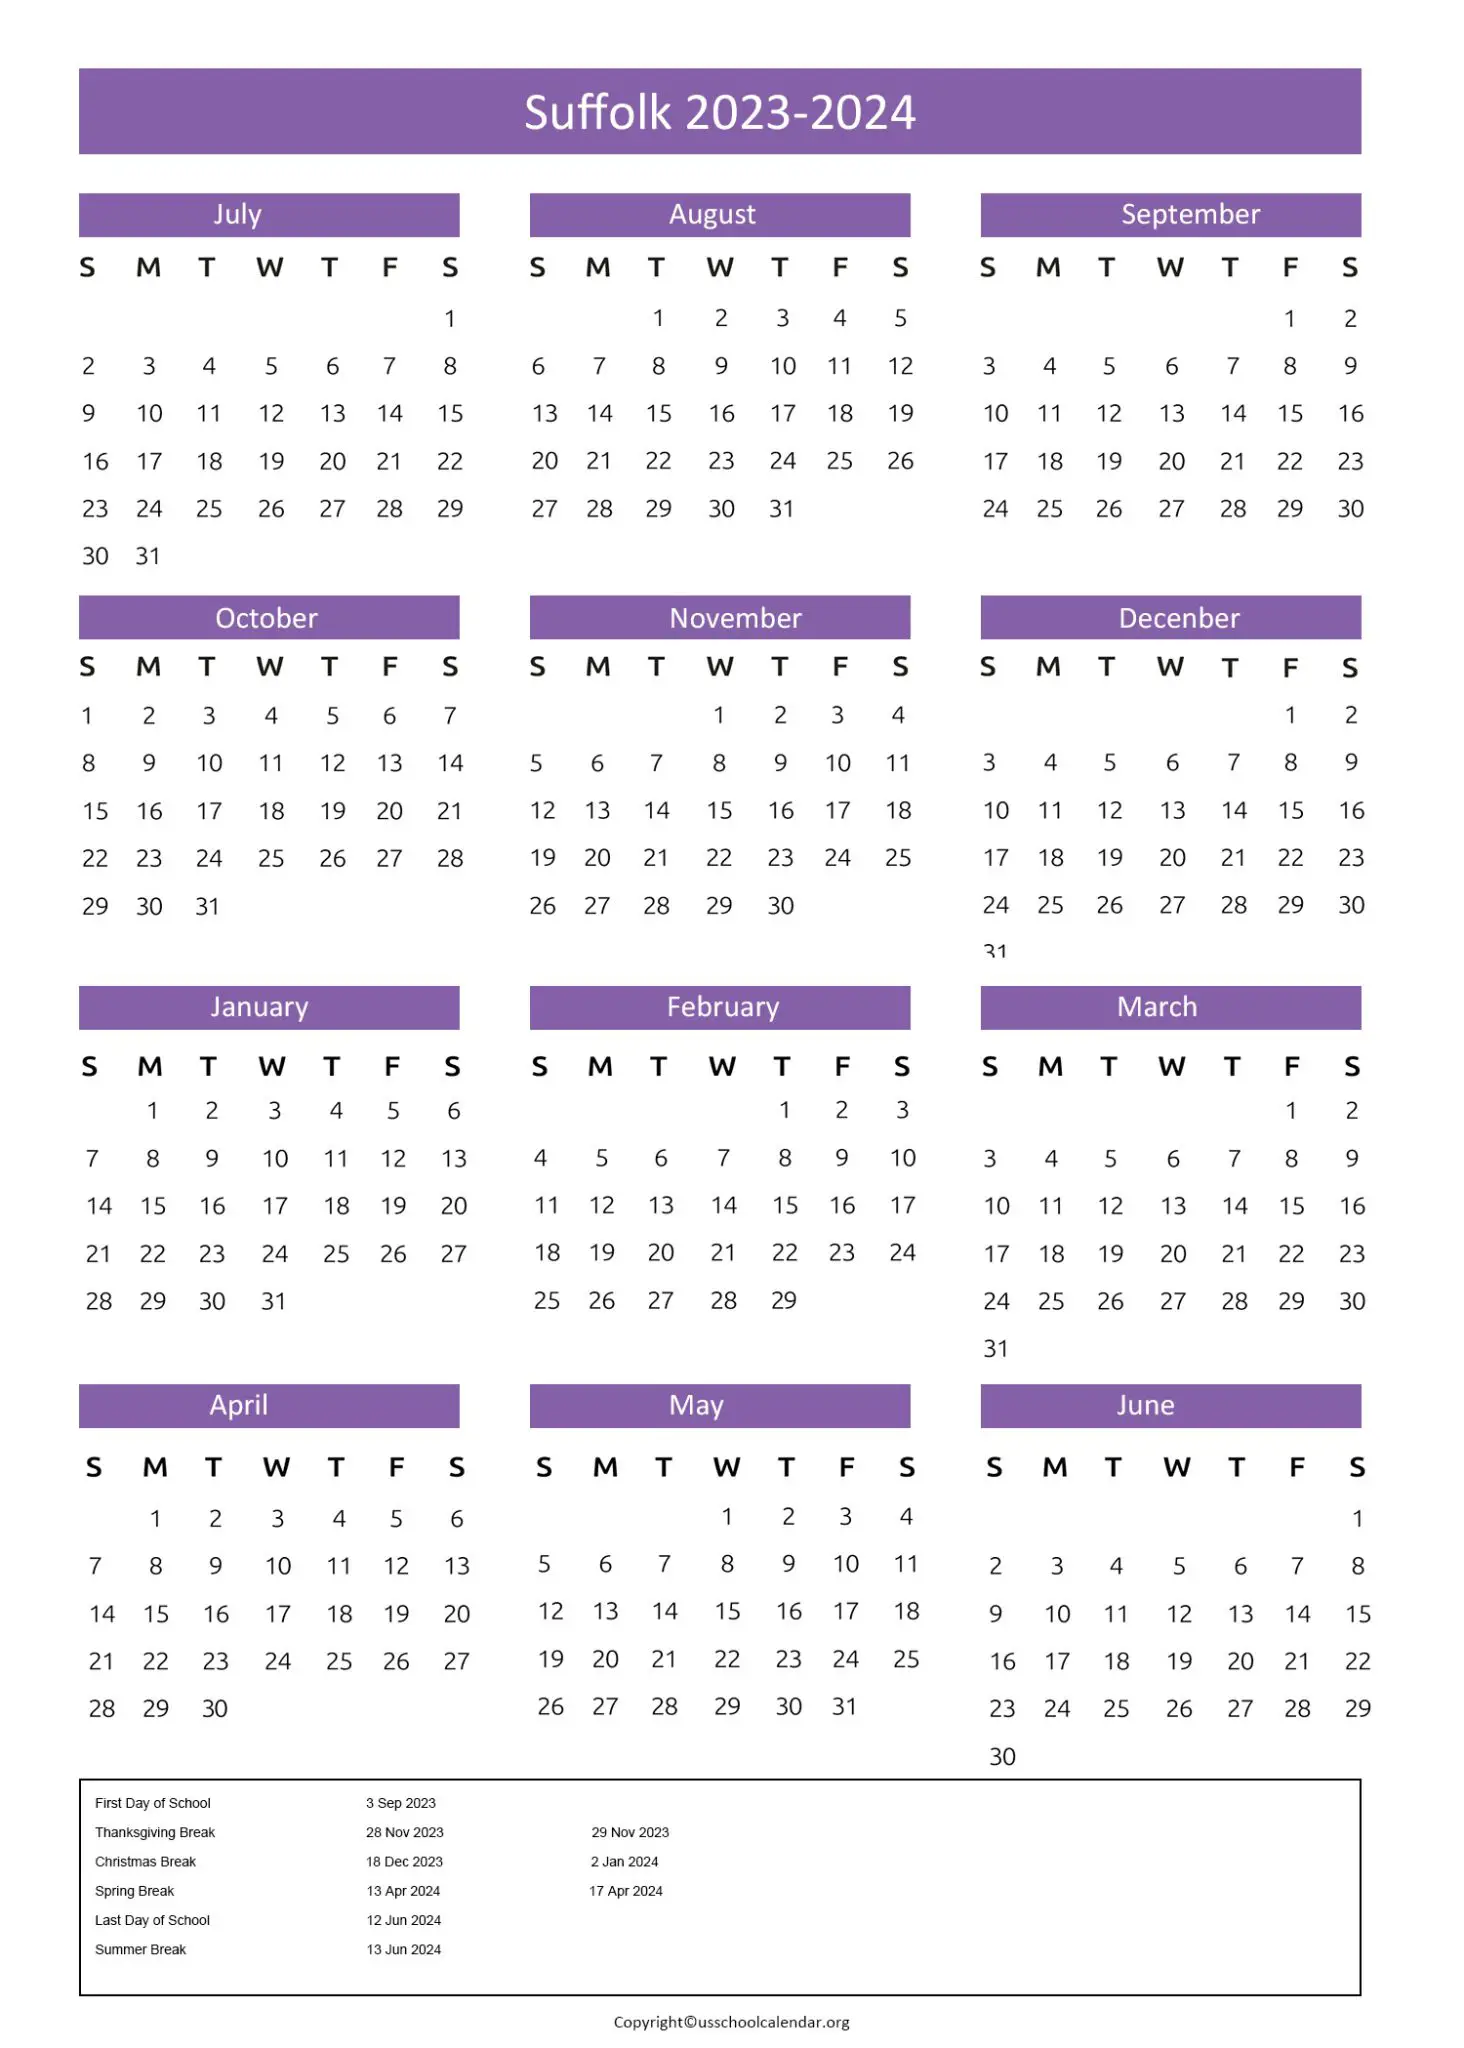 Suffolk Public Schools Calendar with Holidays 20232024